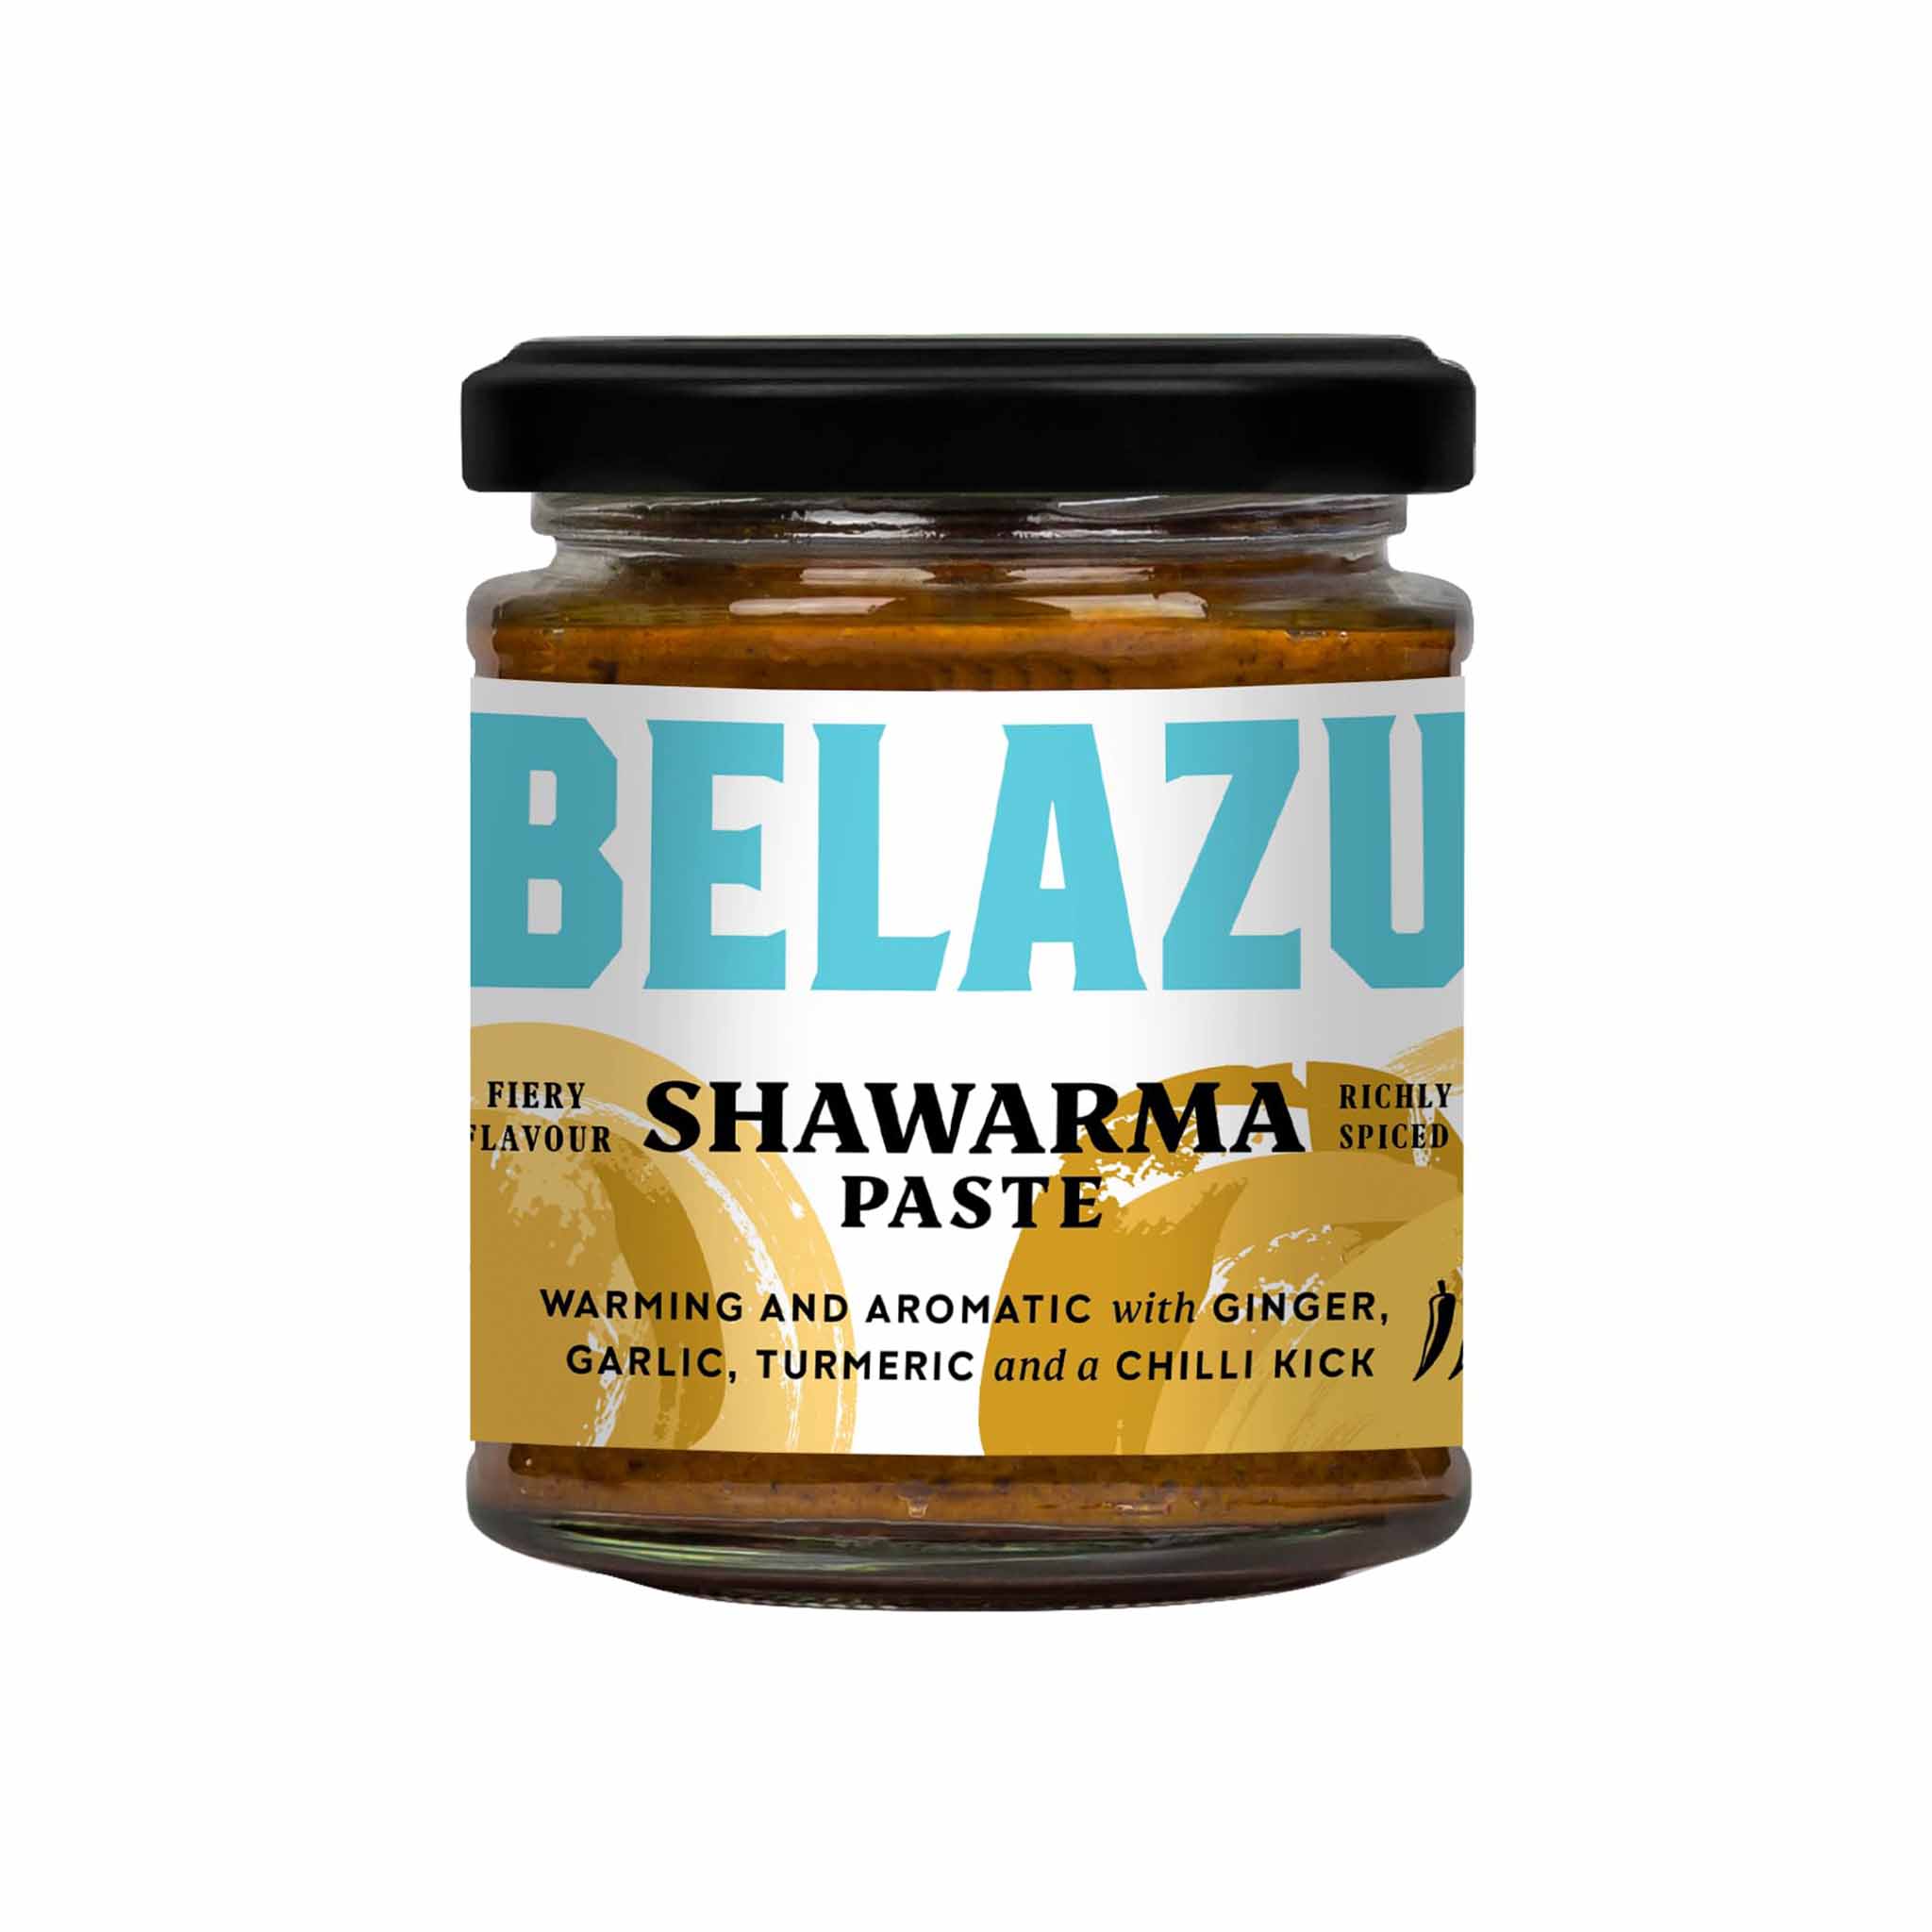 Belazu Shawarma Paste in a Glass Jar